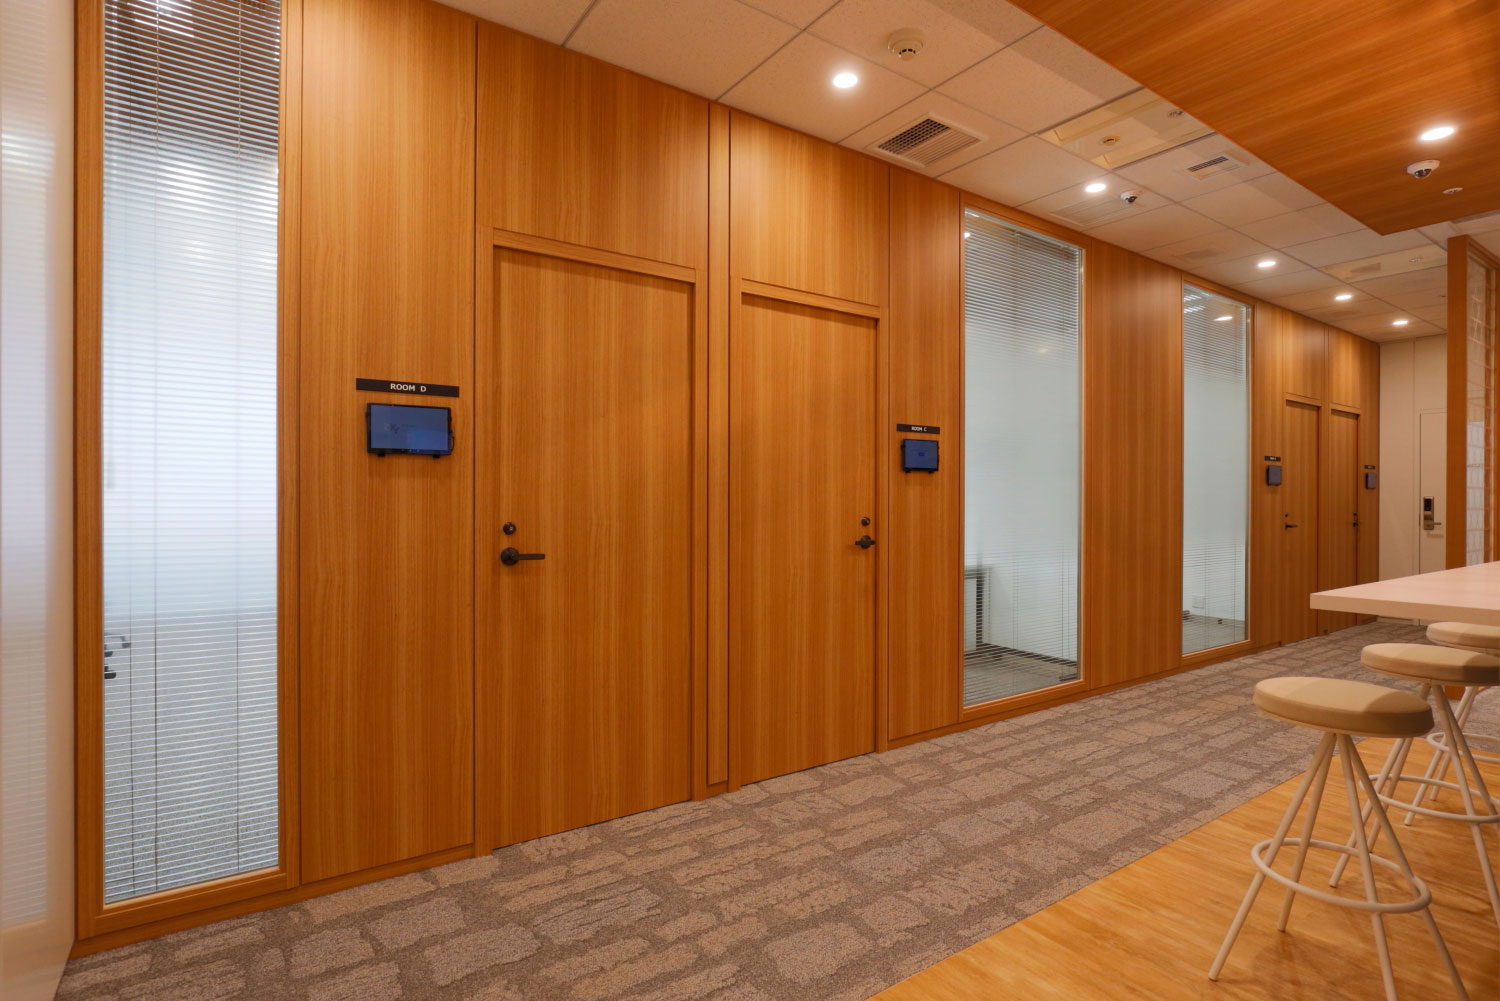 レンタルオフィススペースは
防音に配慮した完全個室 イメージ